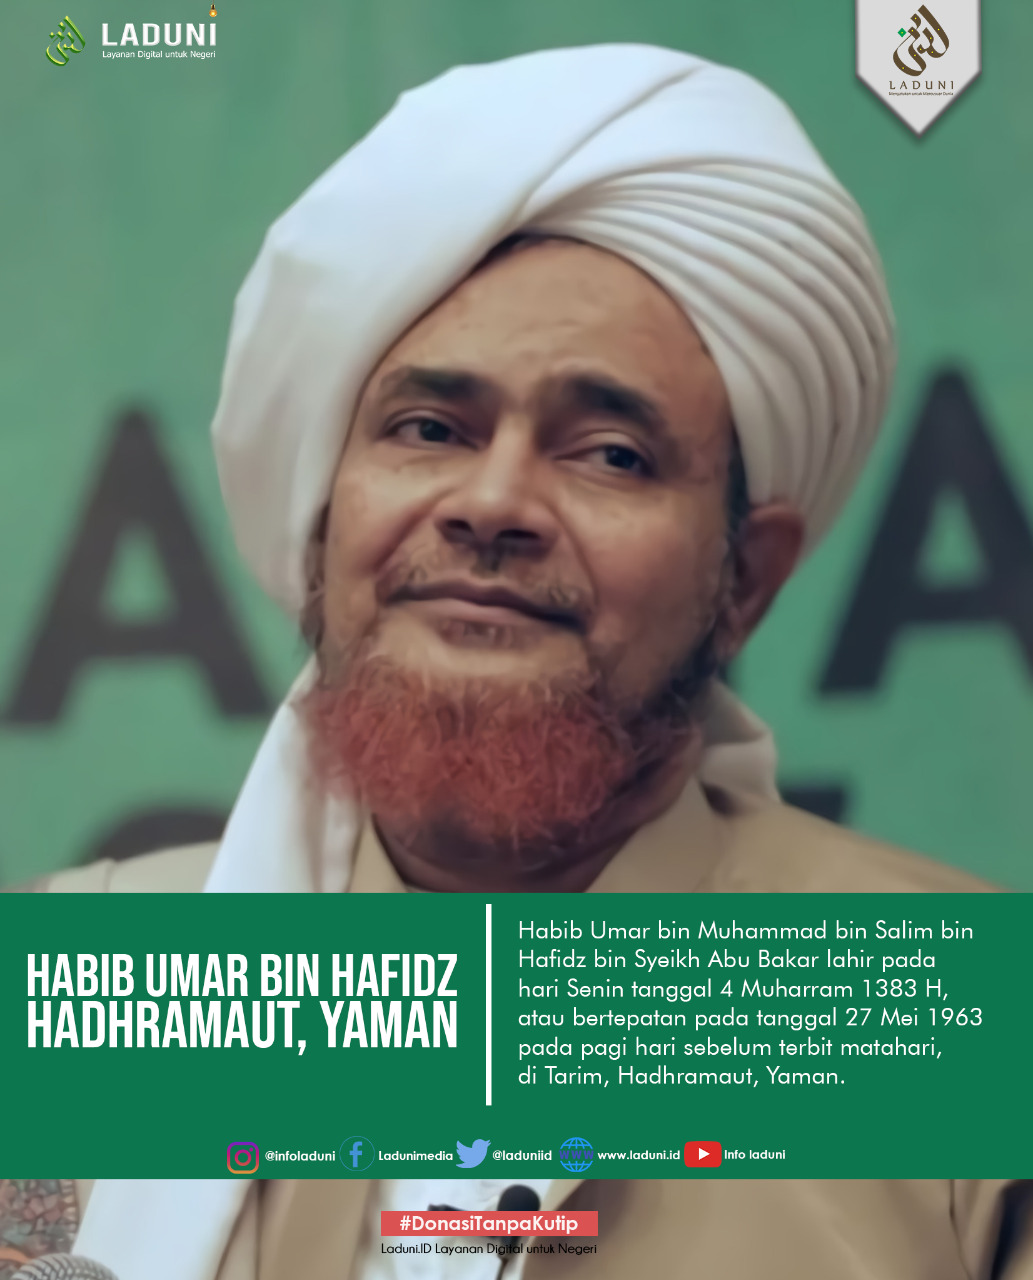 Biografi Habib Umar Bin Muhammad Bin Salim Bin Hafidz Profil Ulama Laduni Id